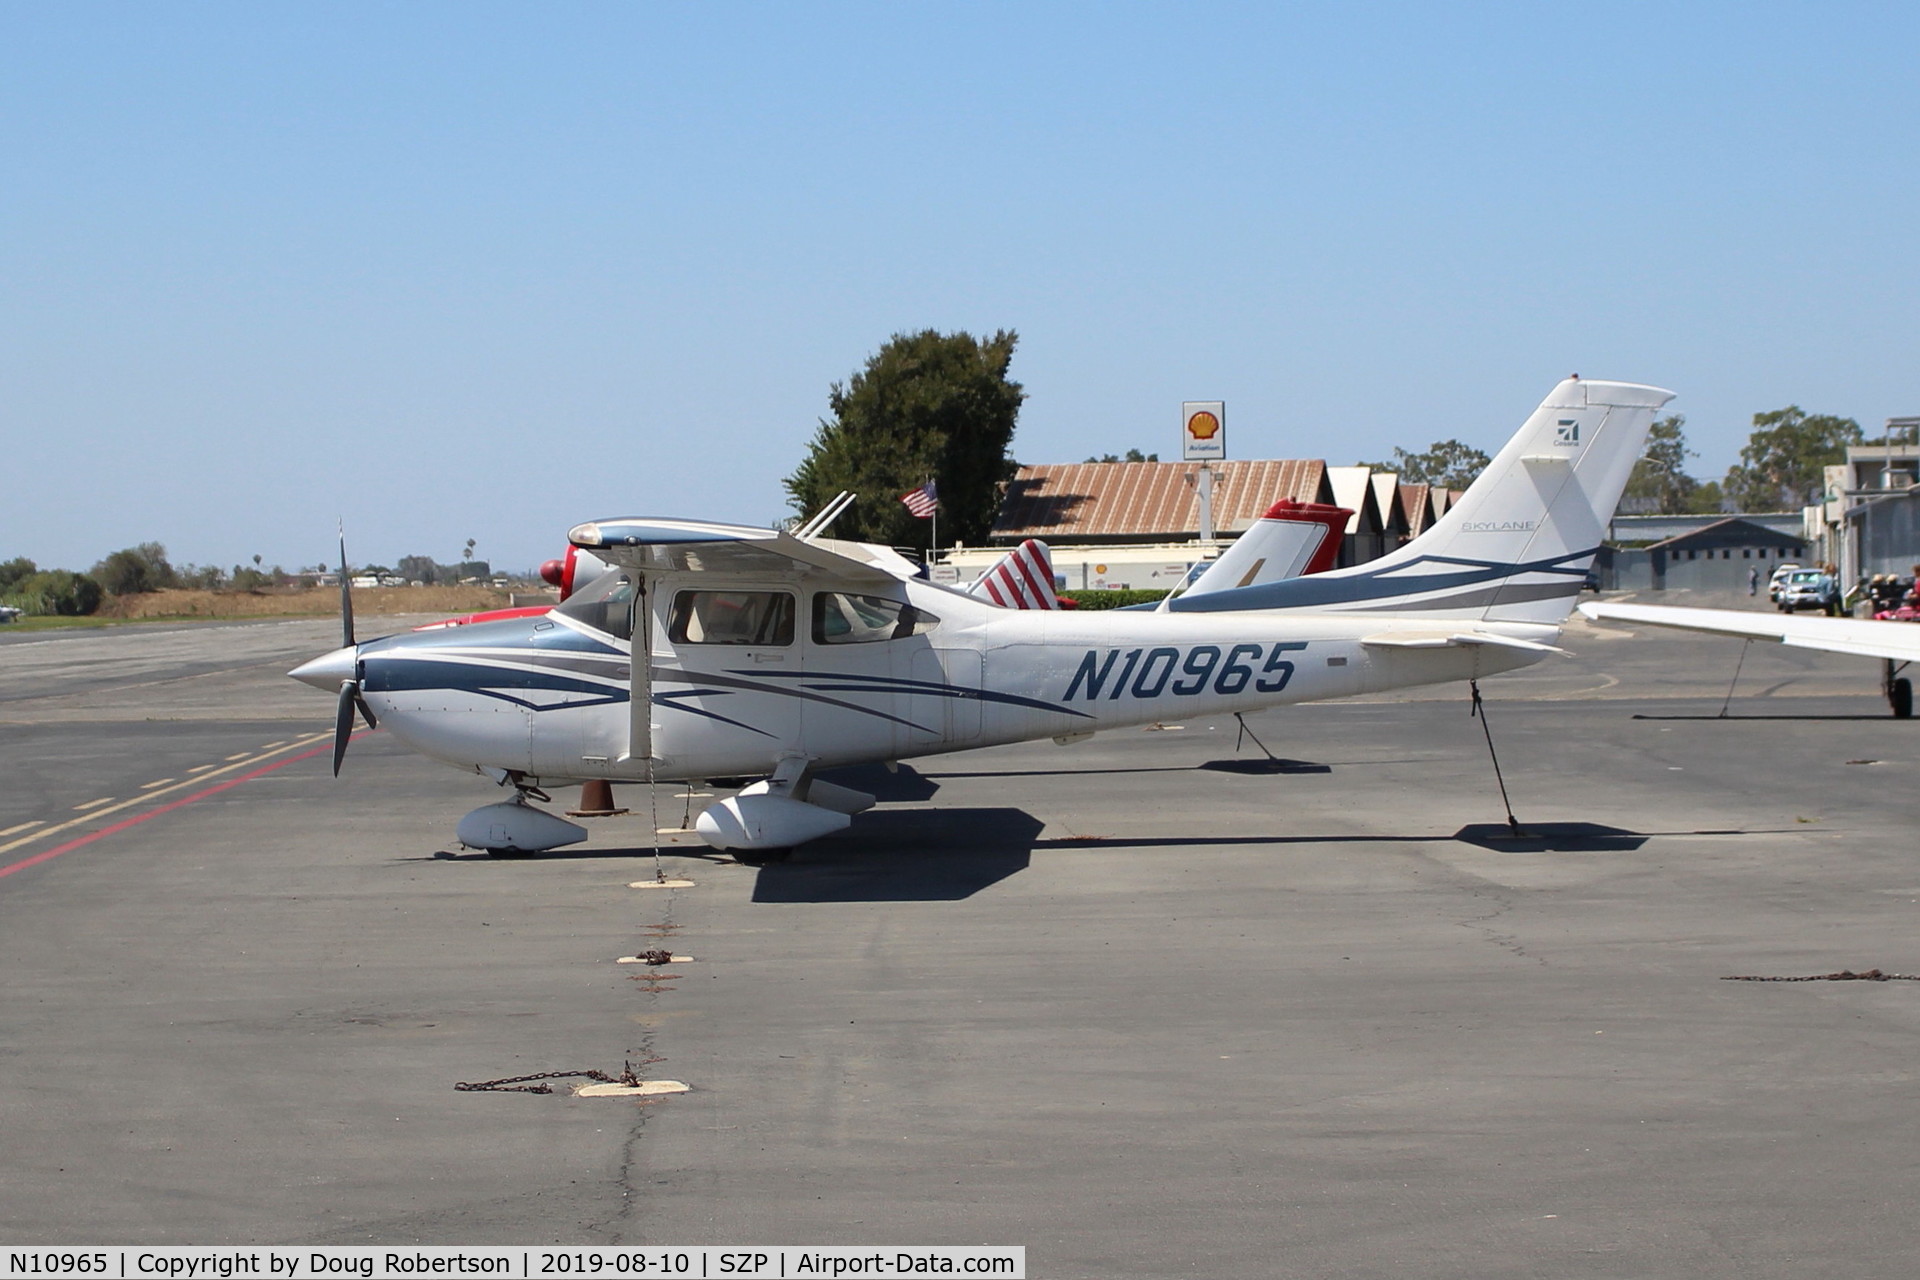 N10965, 2007 Cessna 182T Skylane C/N 18281976, 2007 Cessna 182T SKYLANE, Lycoming IO-540-AB1A5 230 Hp, on Transient Ramp